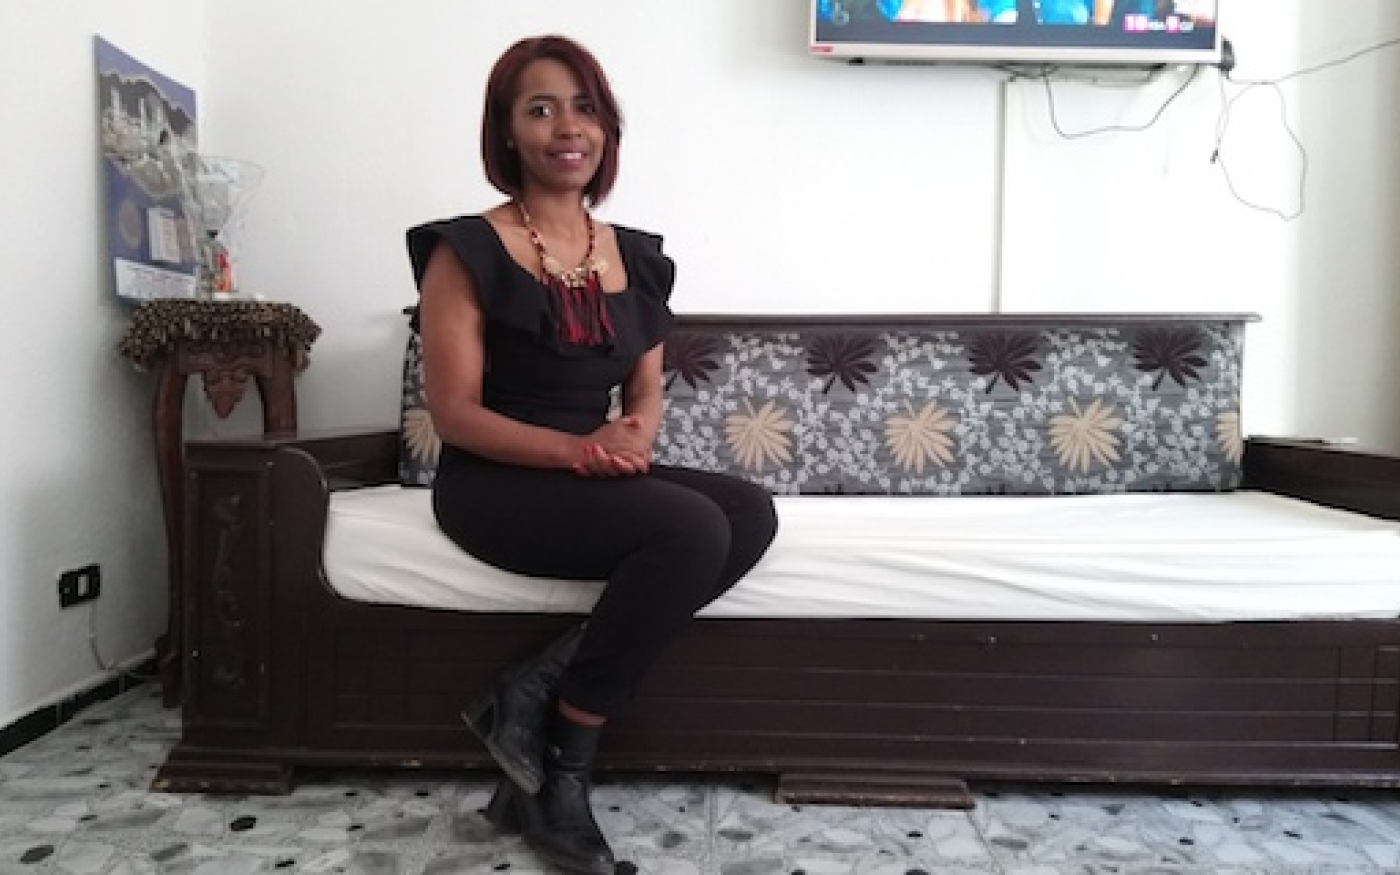 Ghofrane Binous, hôtesse de l'air tunisienne, a été traitée de « sale noire » par une passagère (MEE/Lilia Blaise)